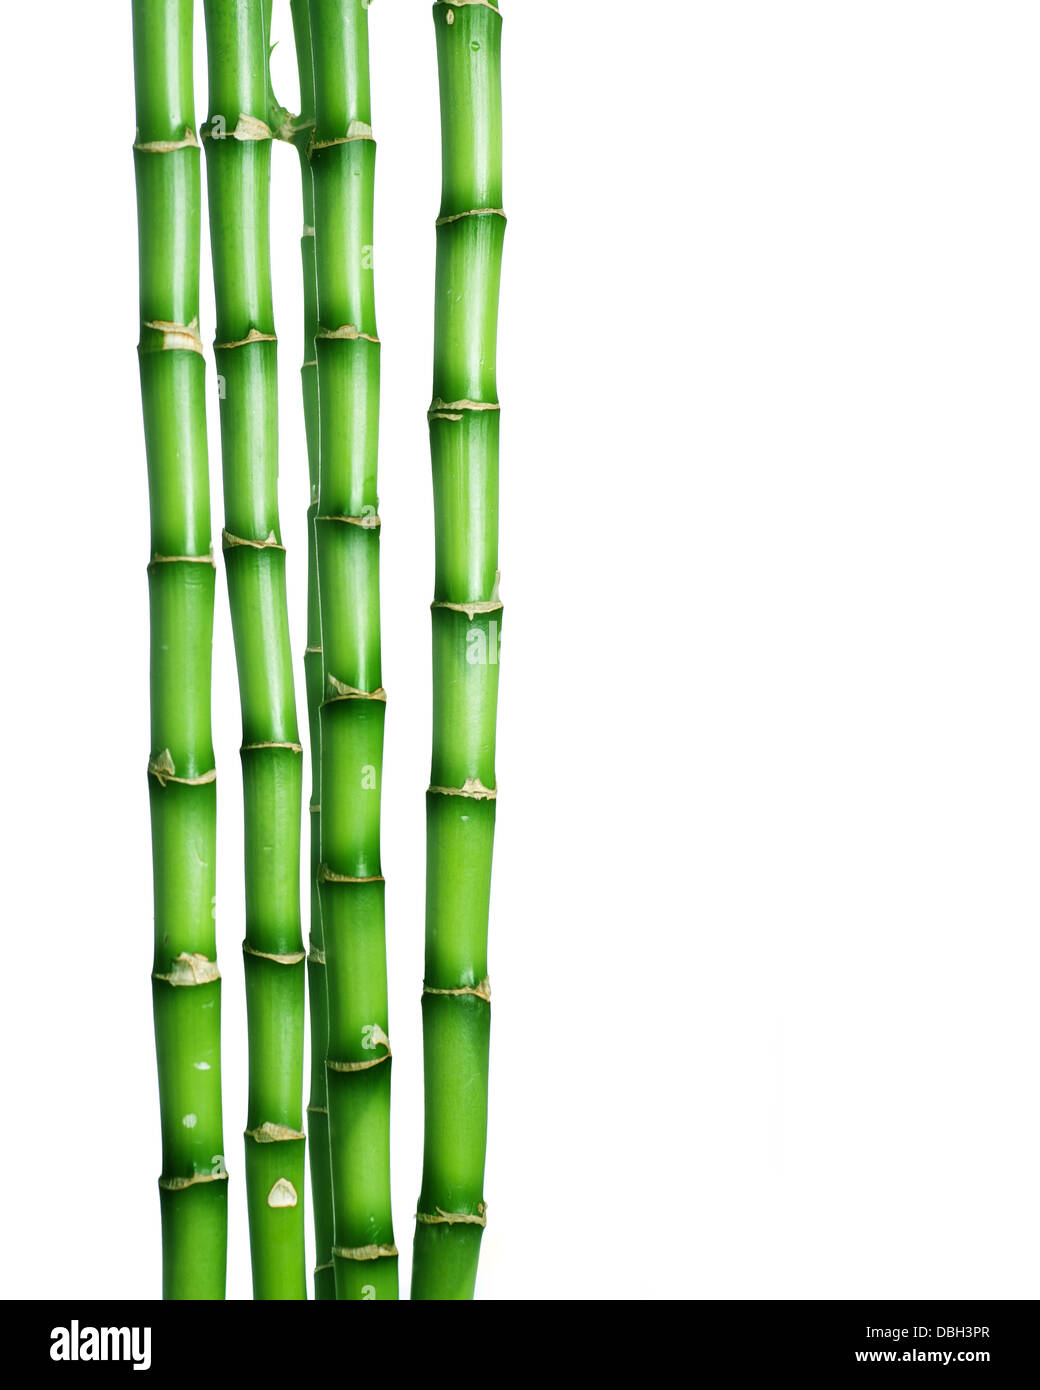 Le bambou sur fond blanc Banque D'Images